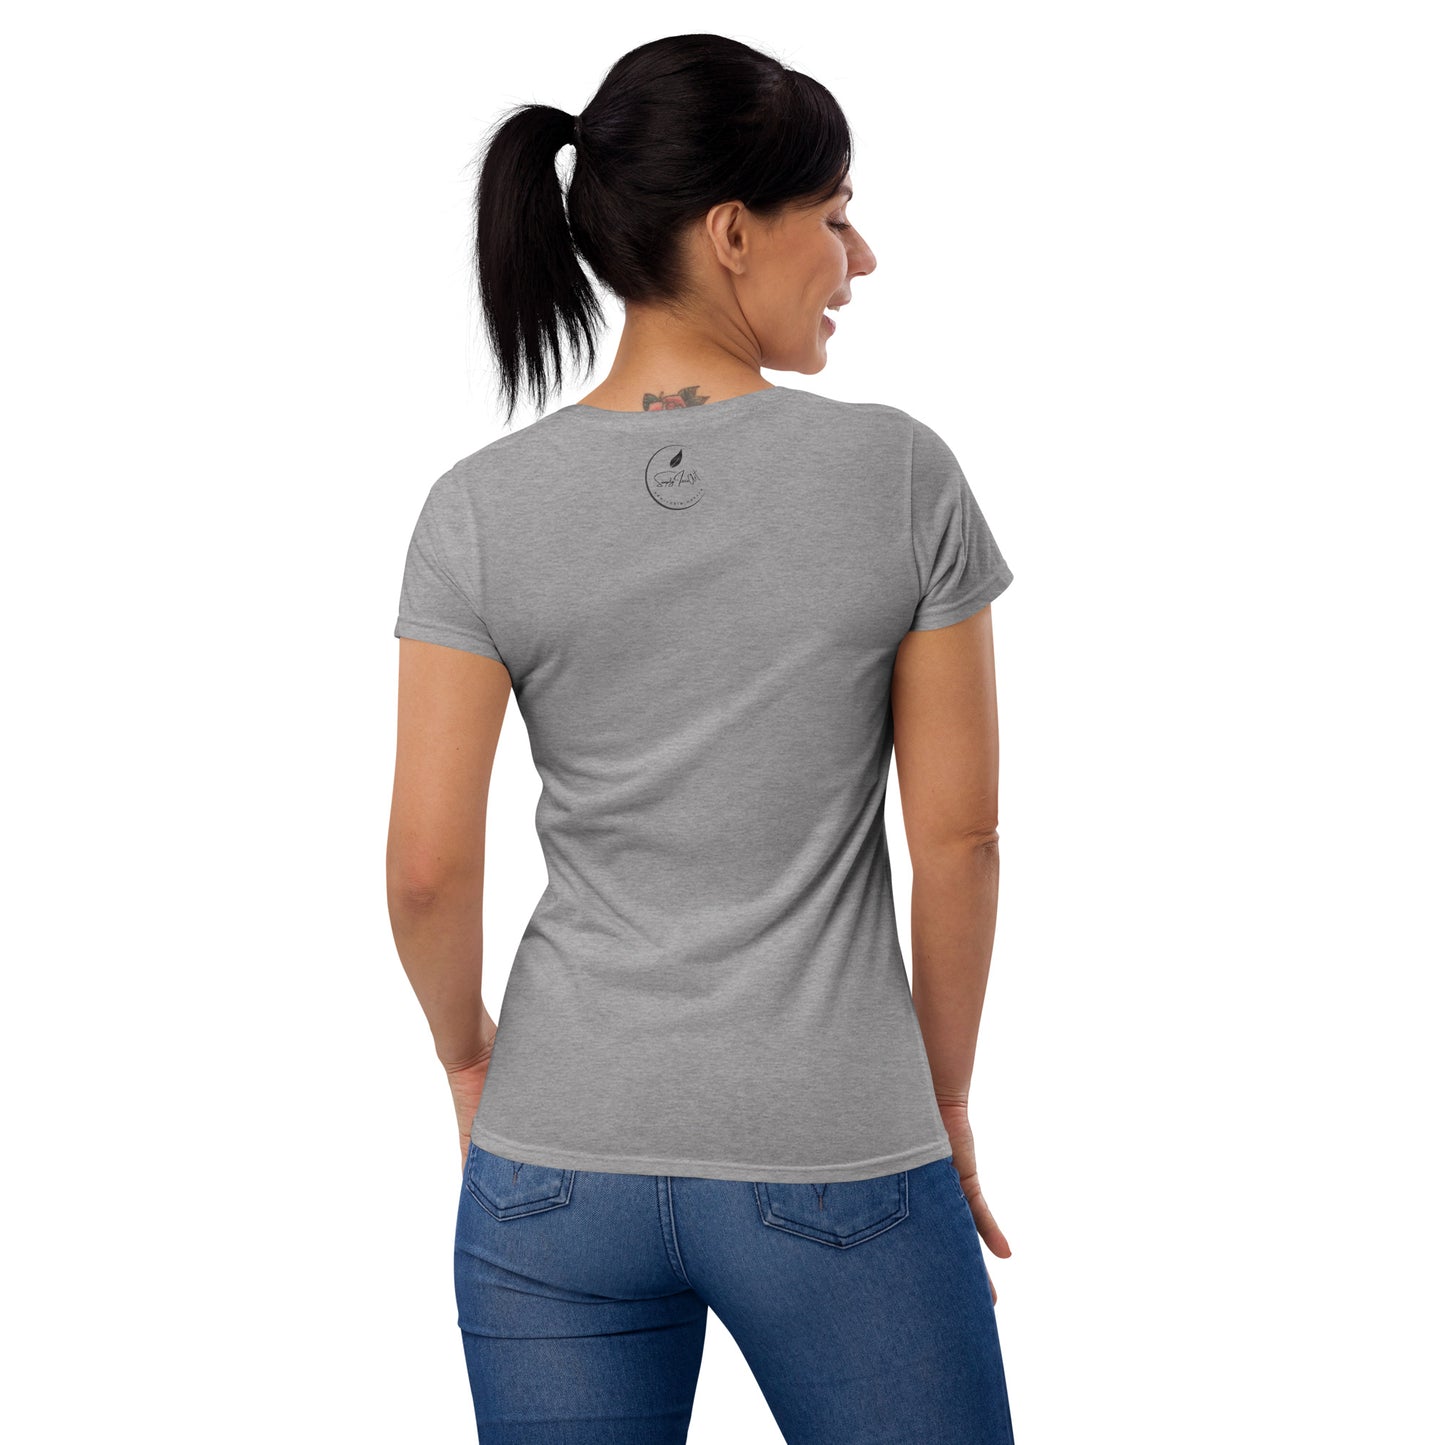 Need a hand - Women's short sleeve t-shirt